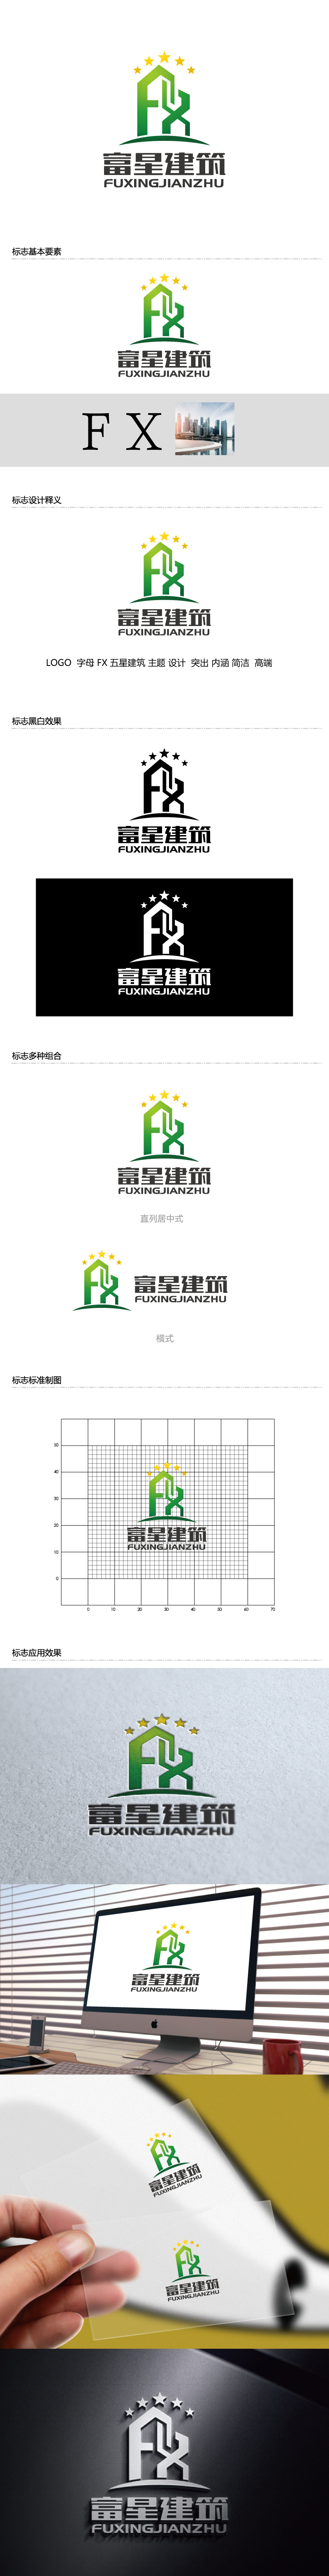 张俊的天津富星建筑工程有限公司logo设计